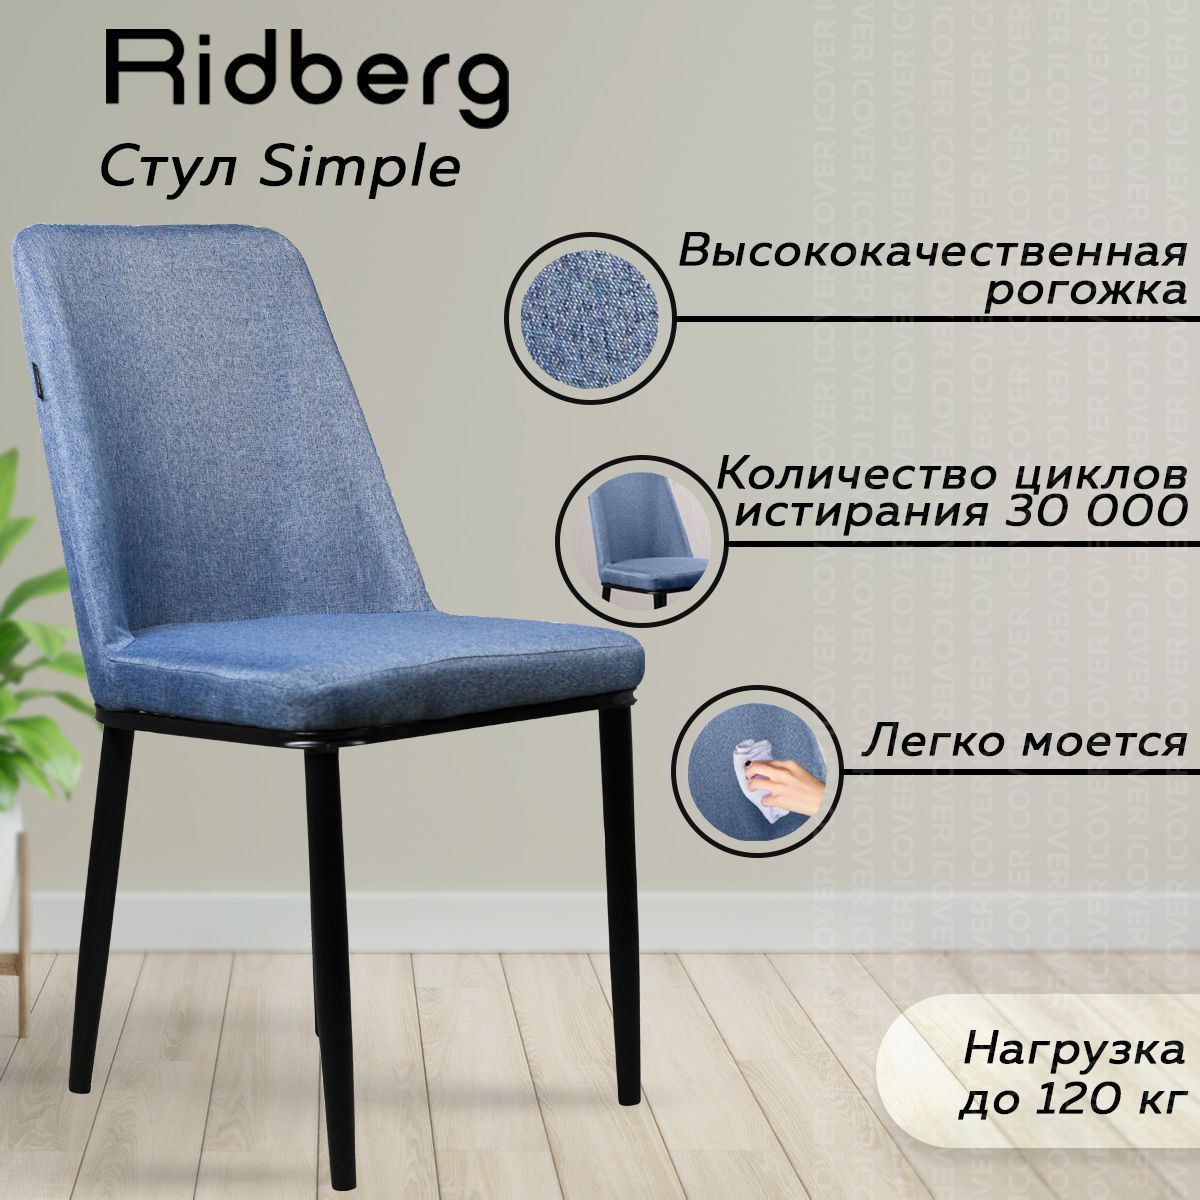 Ridberg discover